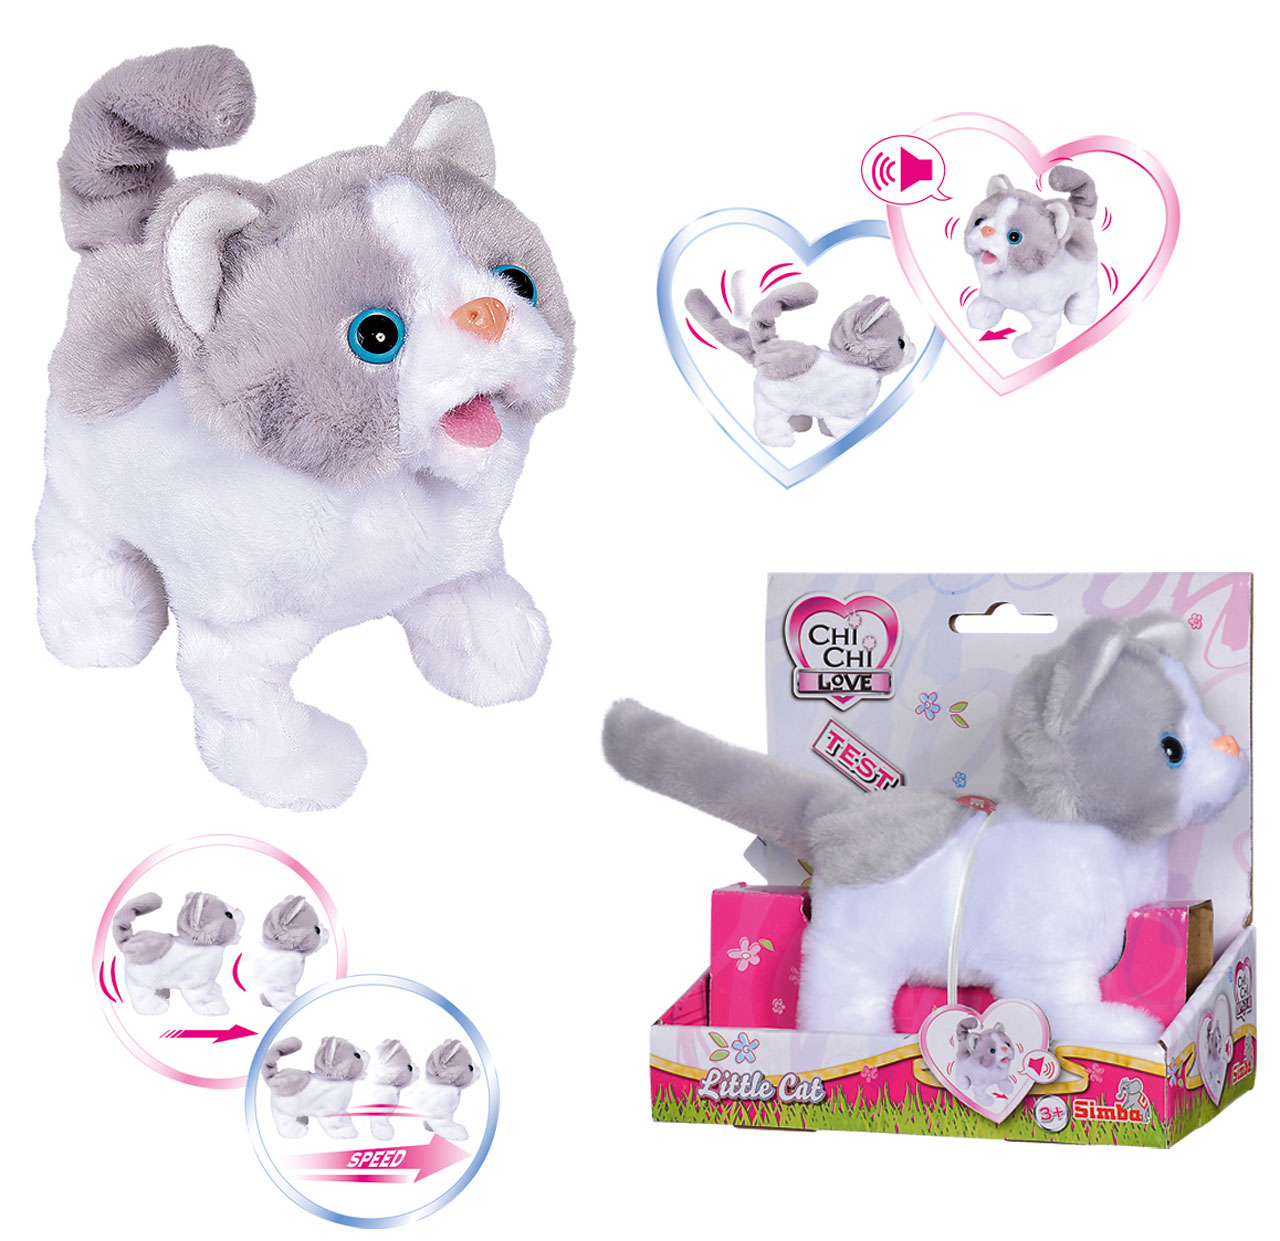 Little Spielzeug24 | Love ✔️ Funktionen Chi Süße (Weiß-Grau) Chi mit Katze Cat SIMBA®